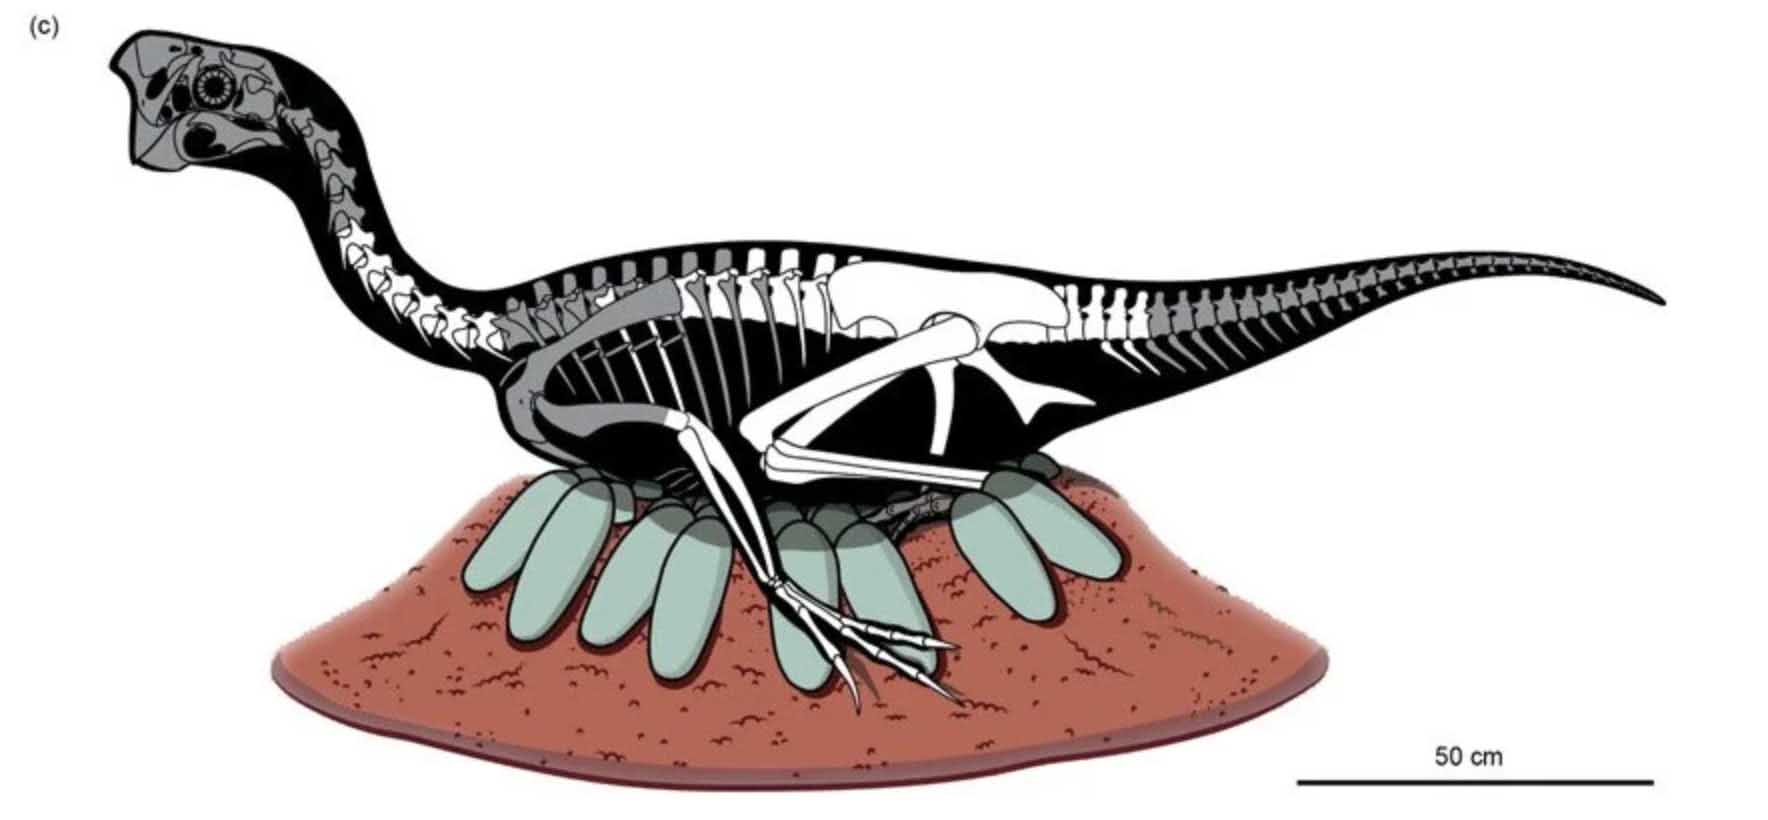 Onheemlech konservéiert Dinosaurier Embryo am fossiliséierte Ee fonnt 2